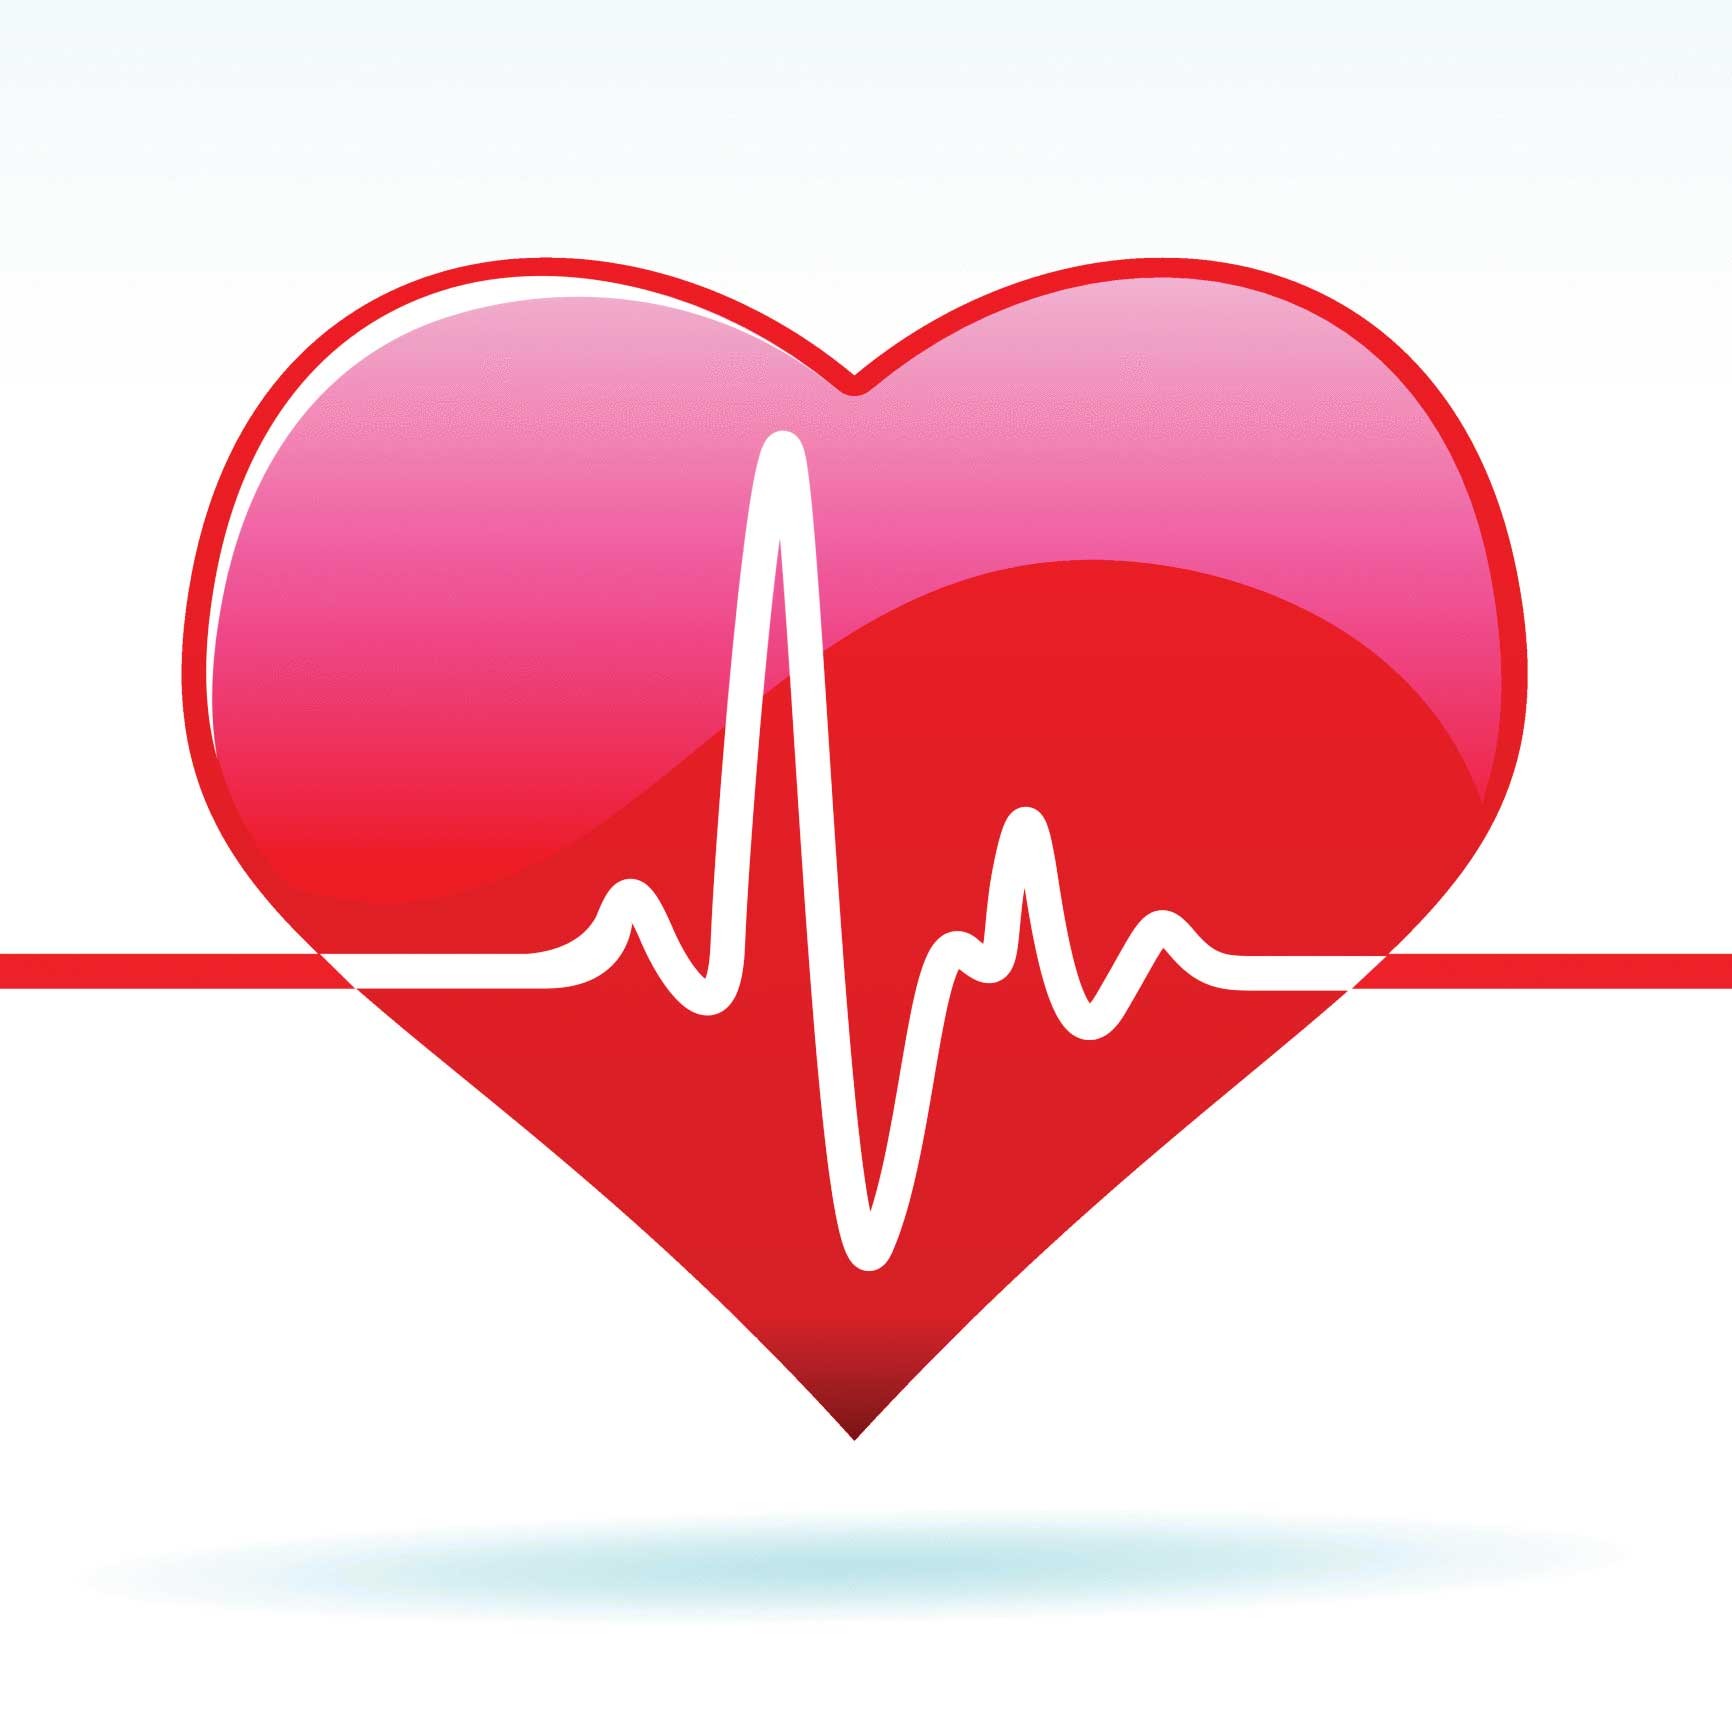 Tác dụng của tỏi đen trong điều trị bệnh về tim mạch như thế nào?